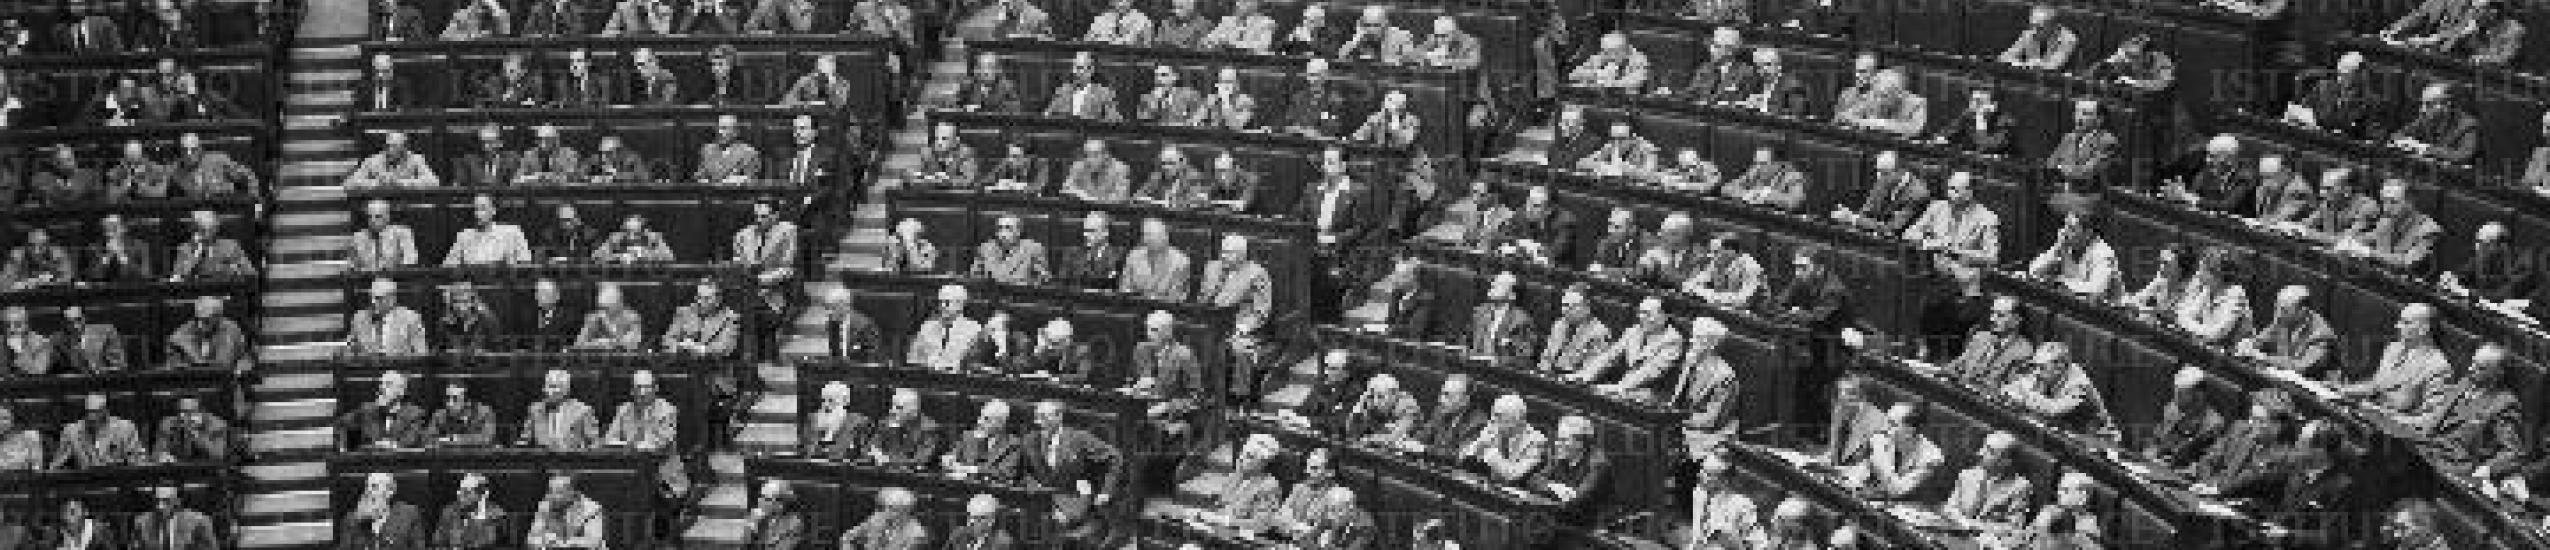 Elezioni 1948 e demonizzazione dell’avversario, l’ilsrec ne parla a palazzo doria spinola